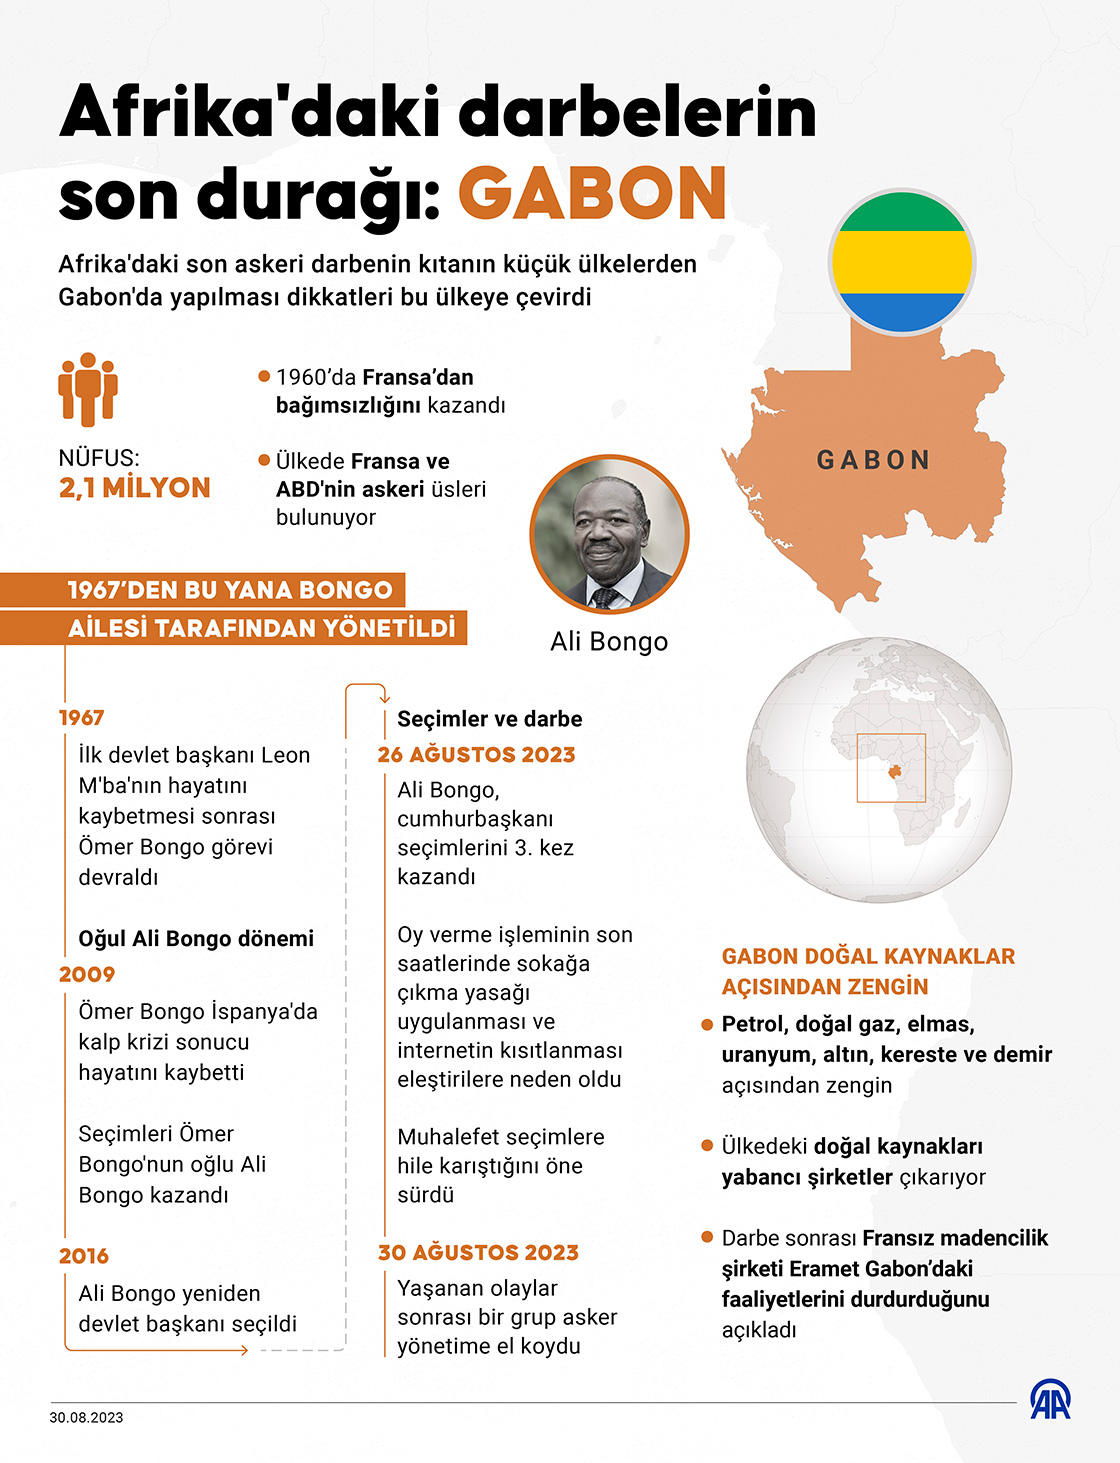 Afrika'daki darbelerin son durağı: Gabon